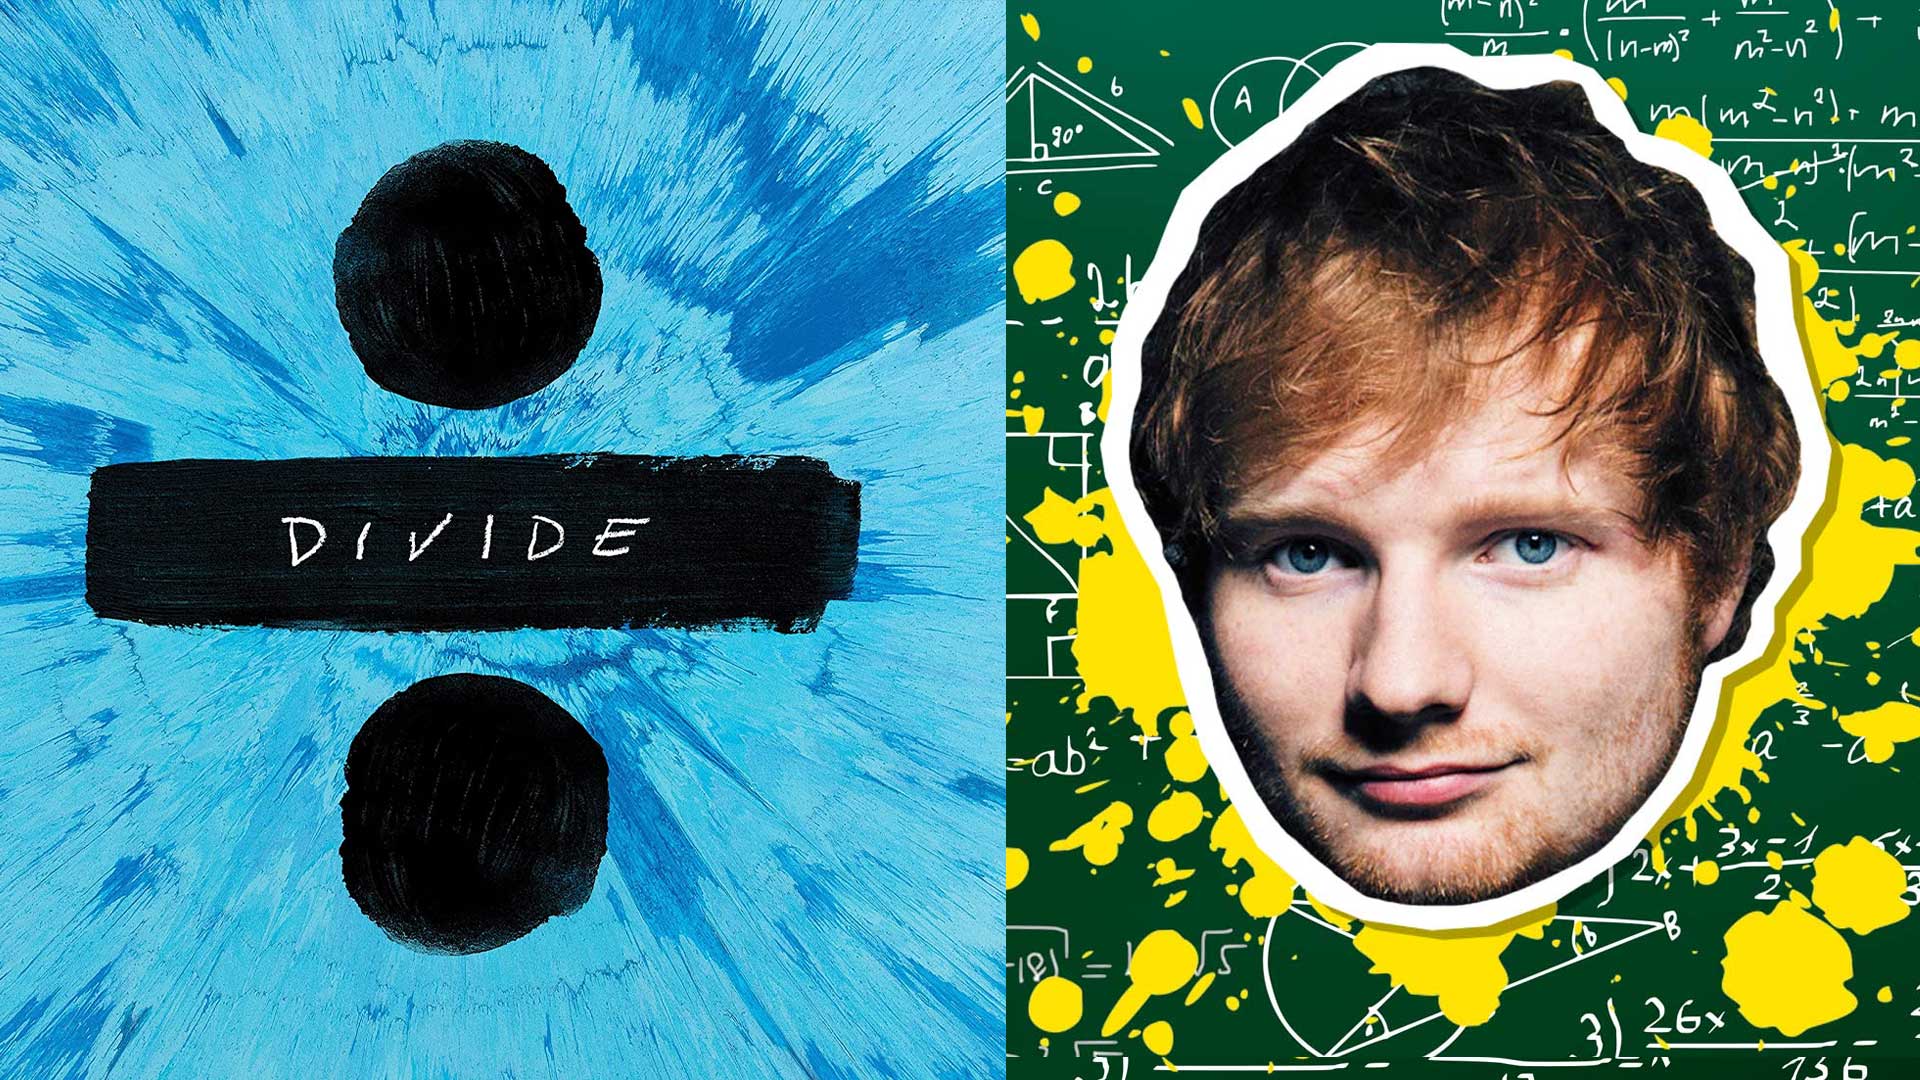 Ed Sheeran and his Divide album